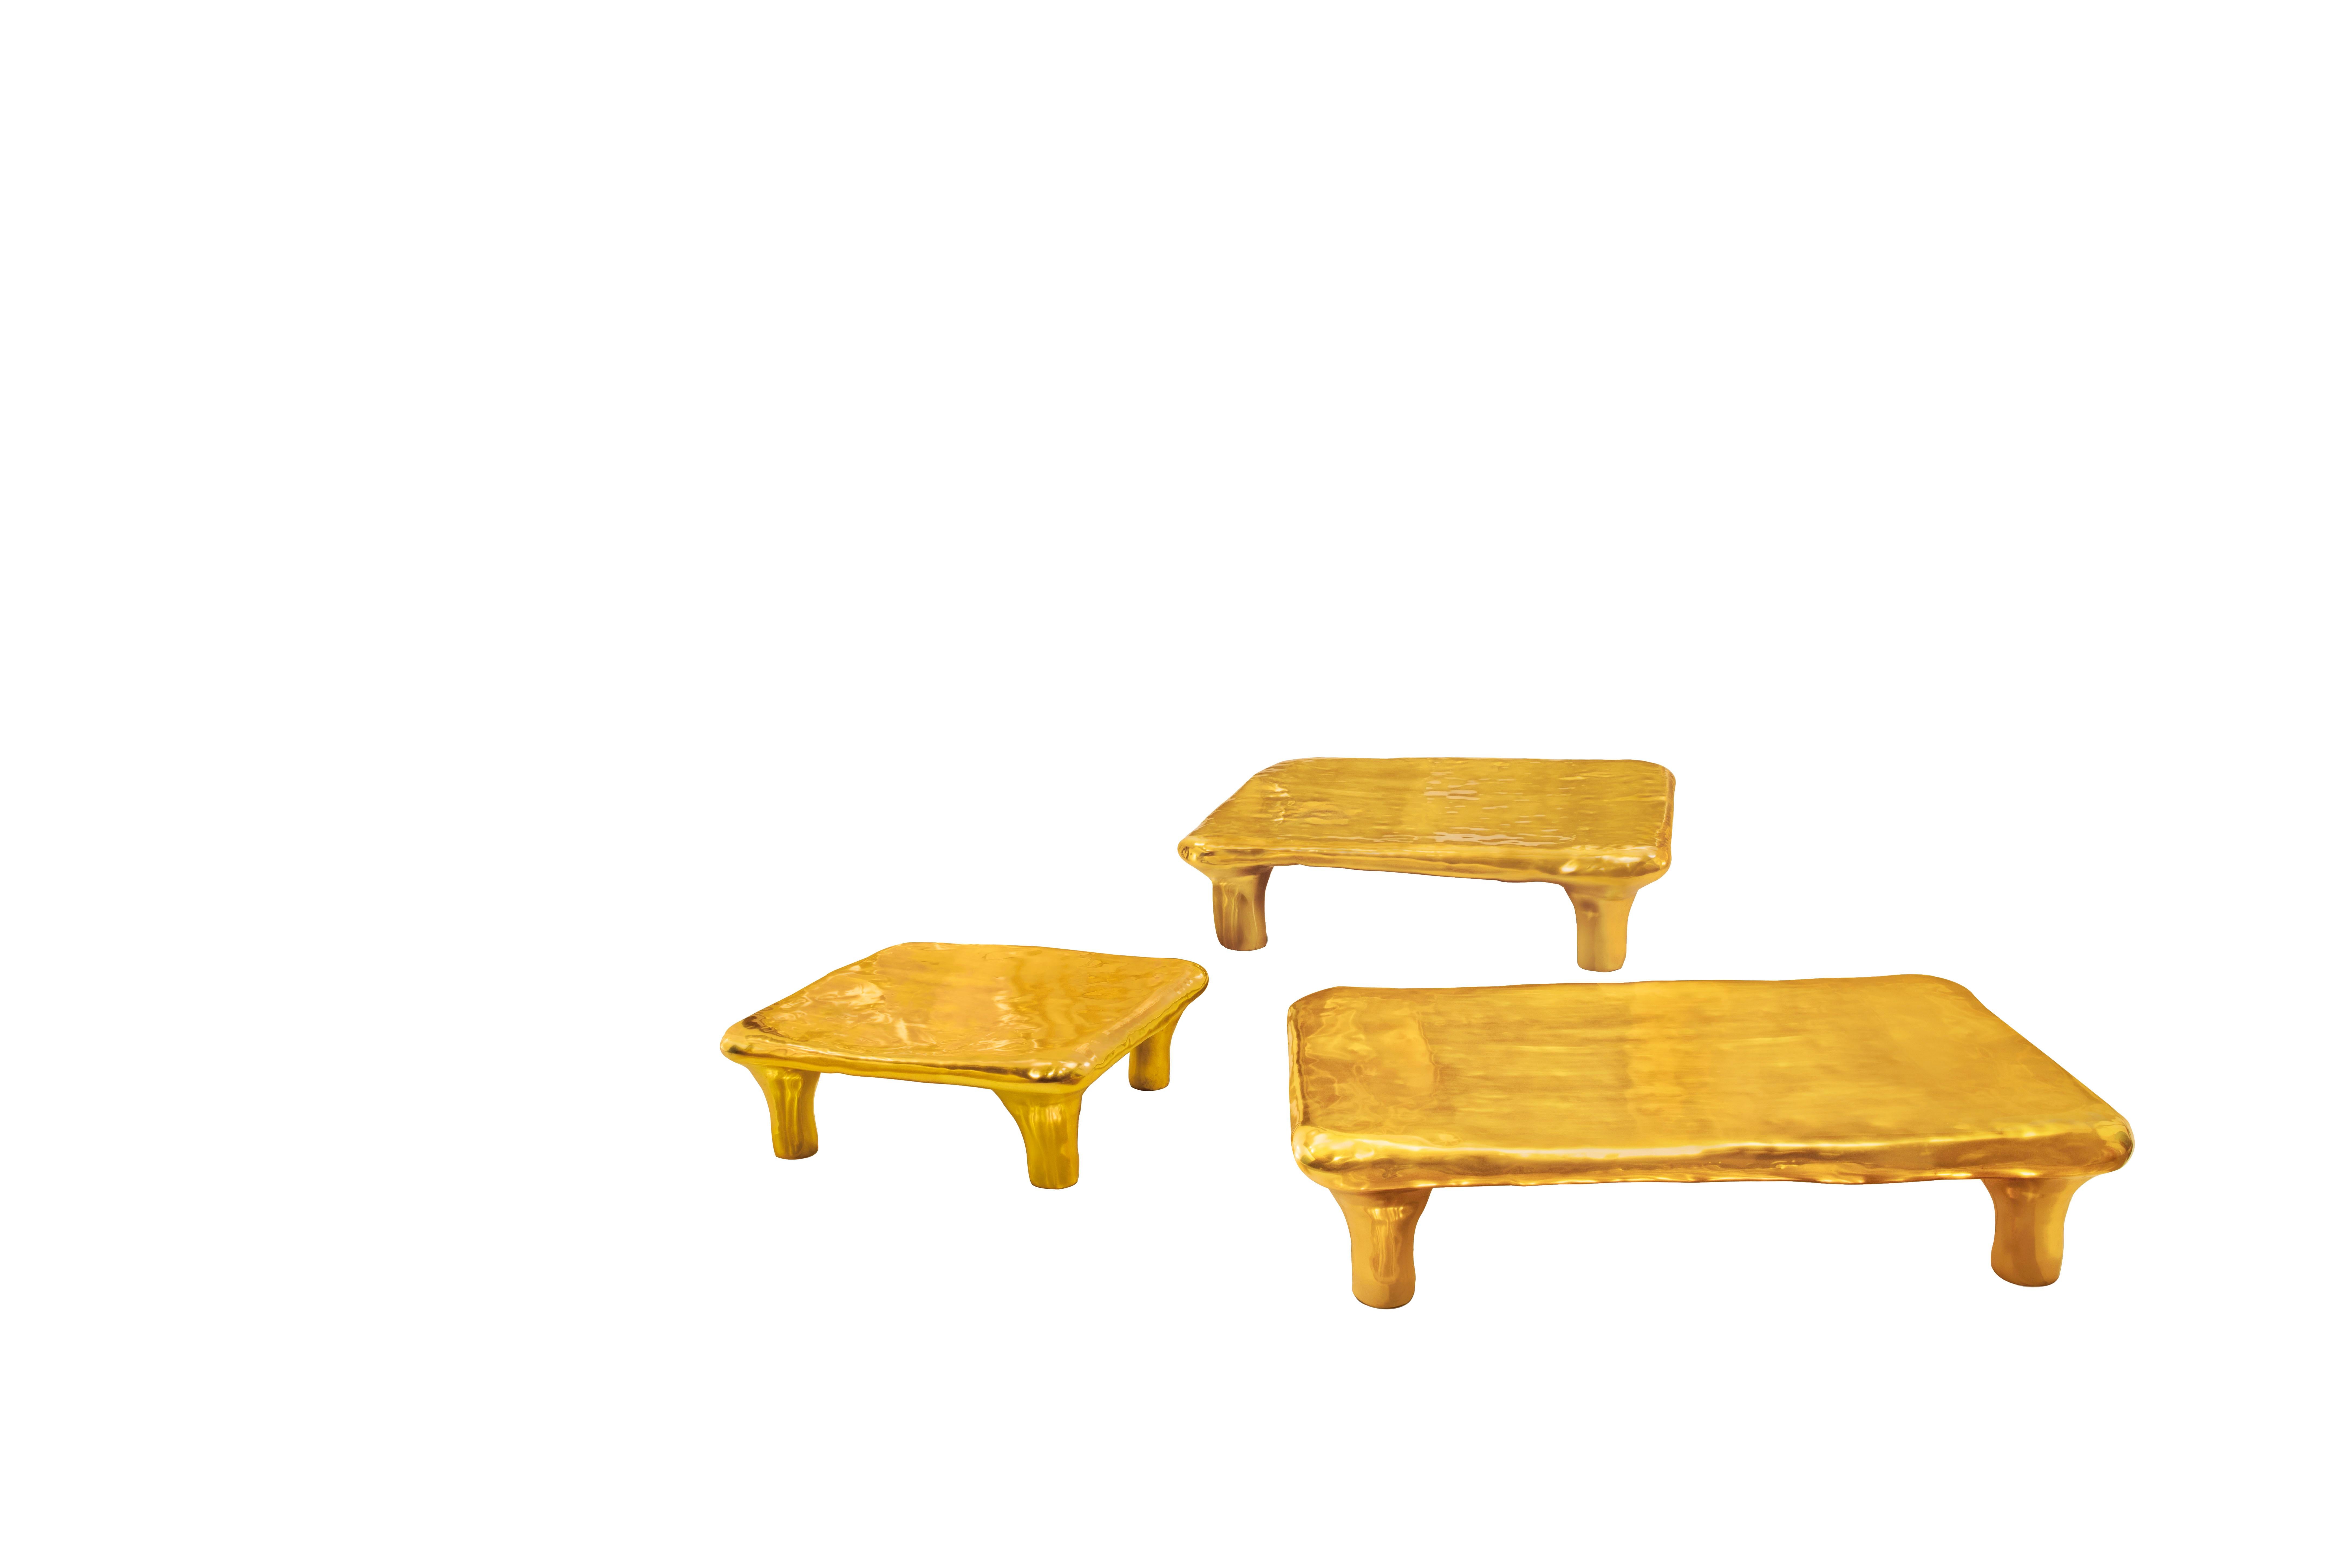 Der Illusion Caffee Table von Scarlet Splendour ist ein quadratischer Couchtisch.

Die Fools' Gold-Kollektion amorpher Formen aus Messingguss ist eine Hommage an das Erbe der indischen Metallkunst. Indien ist in der Tat einer der größten